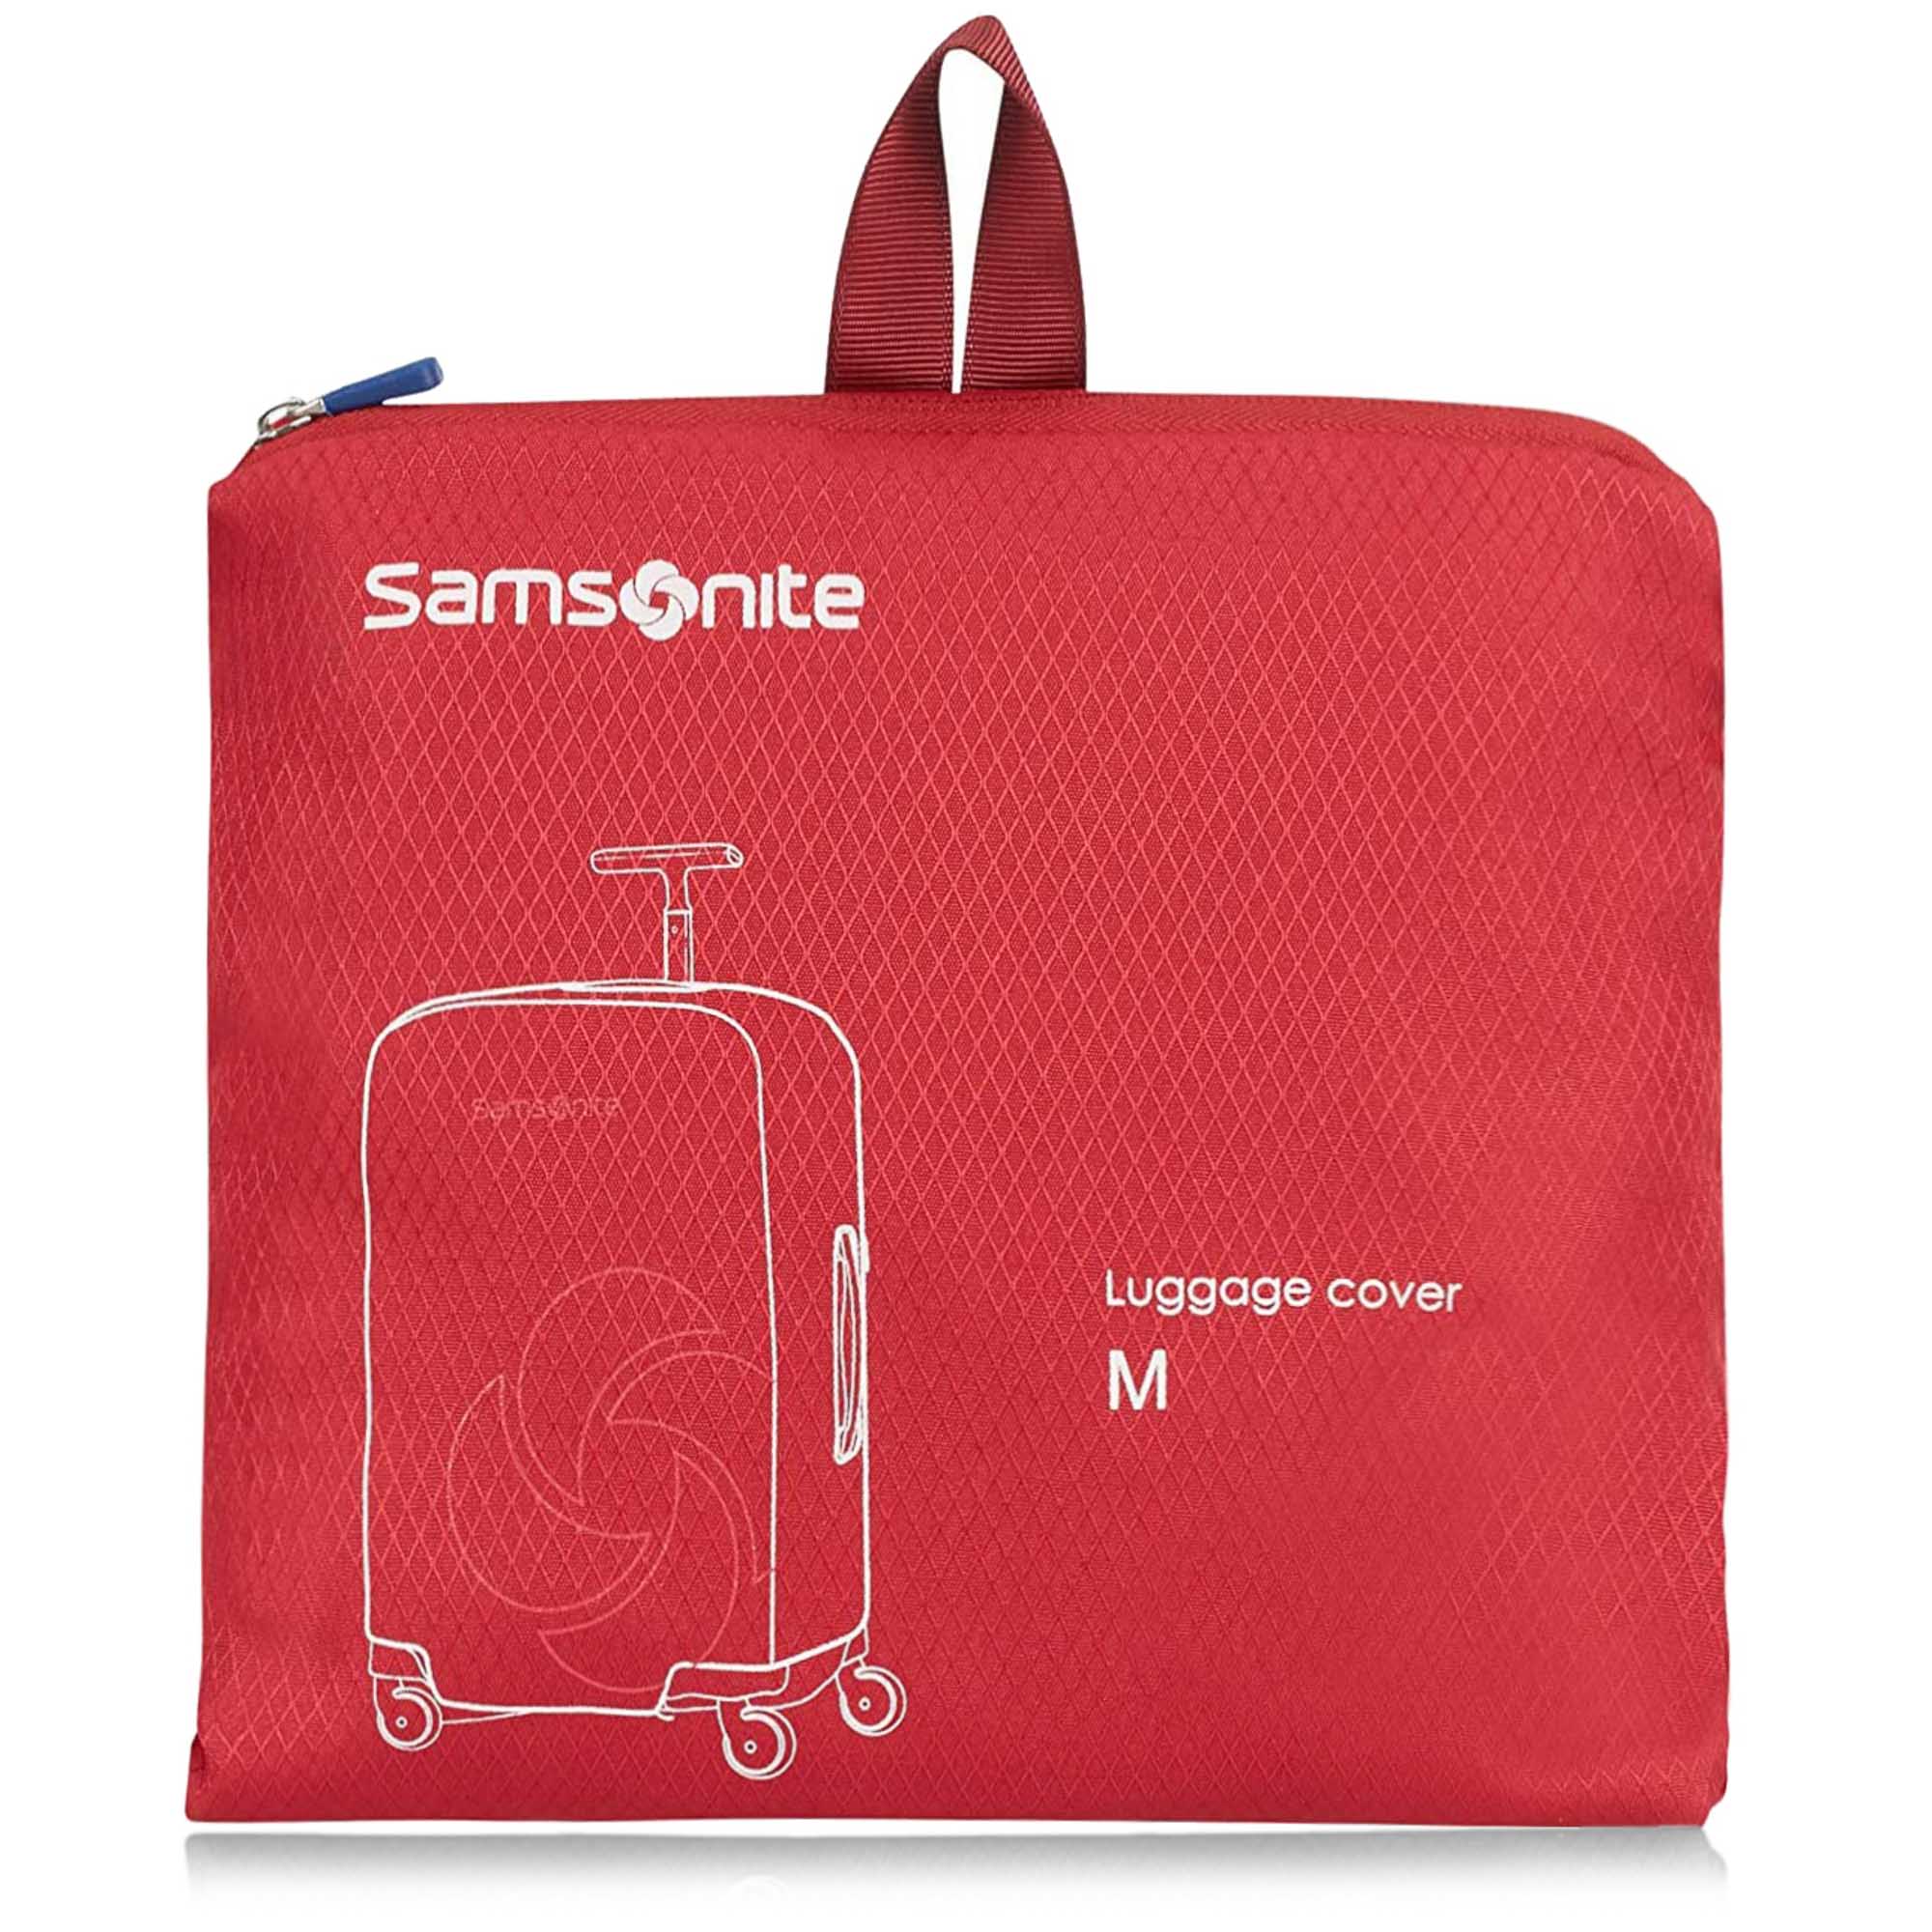 Samsonite Κάλυμμα Βαλίτσας Samsonite Foldable Luggage Cover Μedium 121224-1726 Red